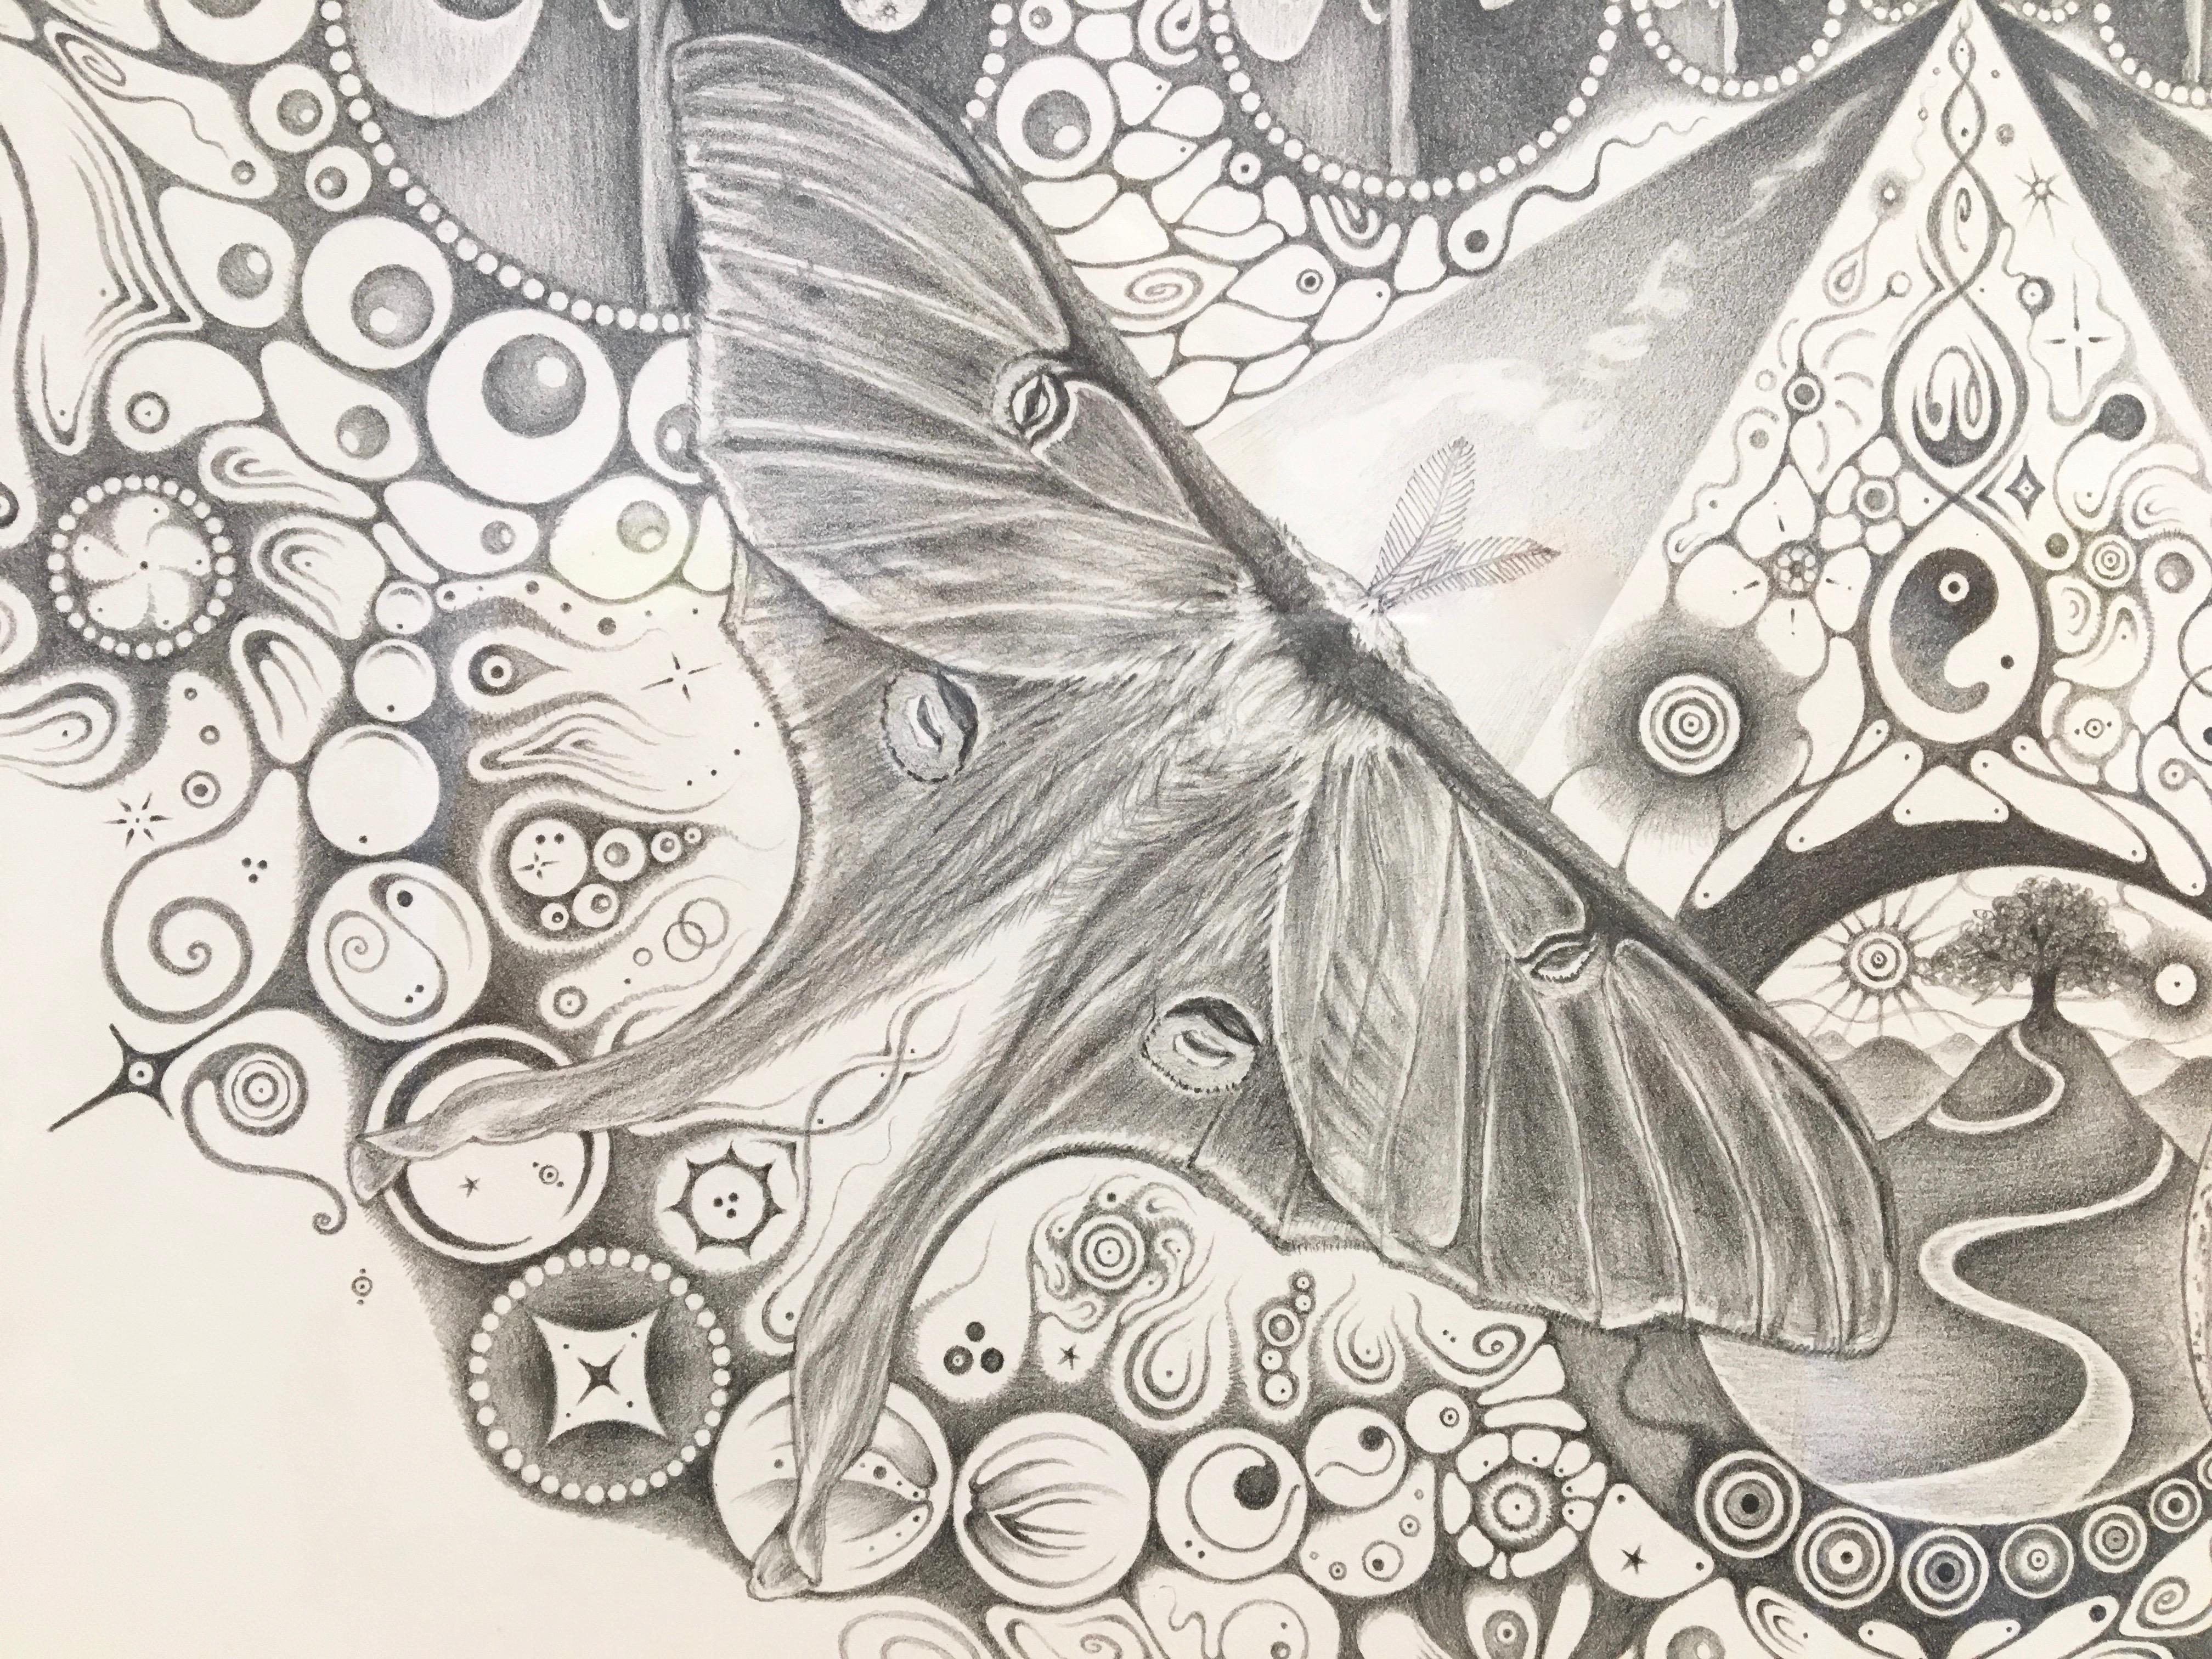 Snowflakes 139 Companions, Moths, Planets, Patterns, Mandala Pencil Drawing - Contemporary Art by Michiyo Ihara